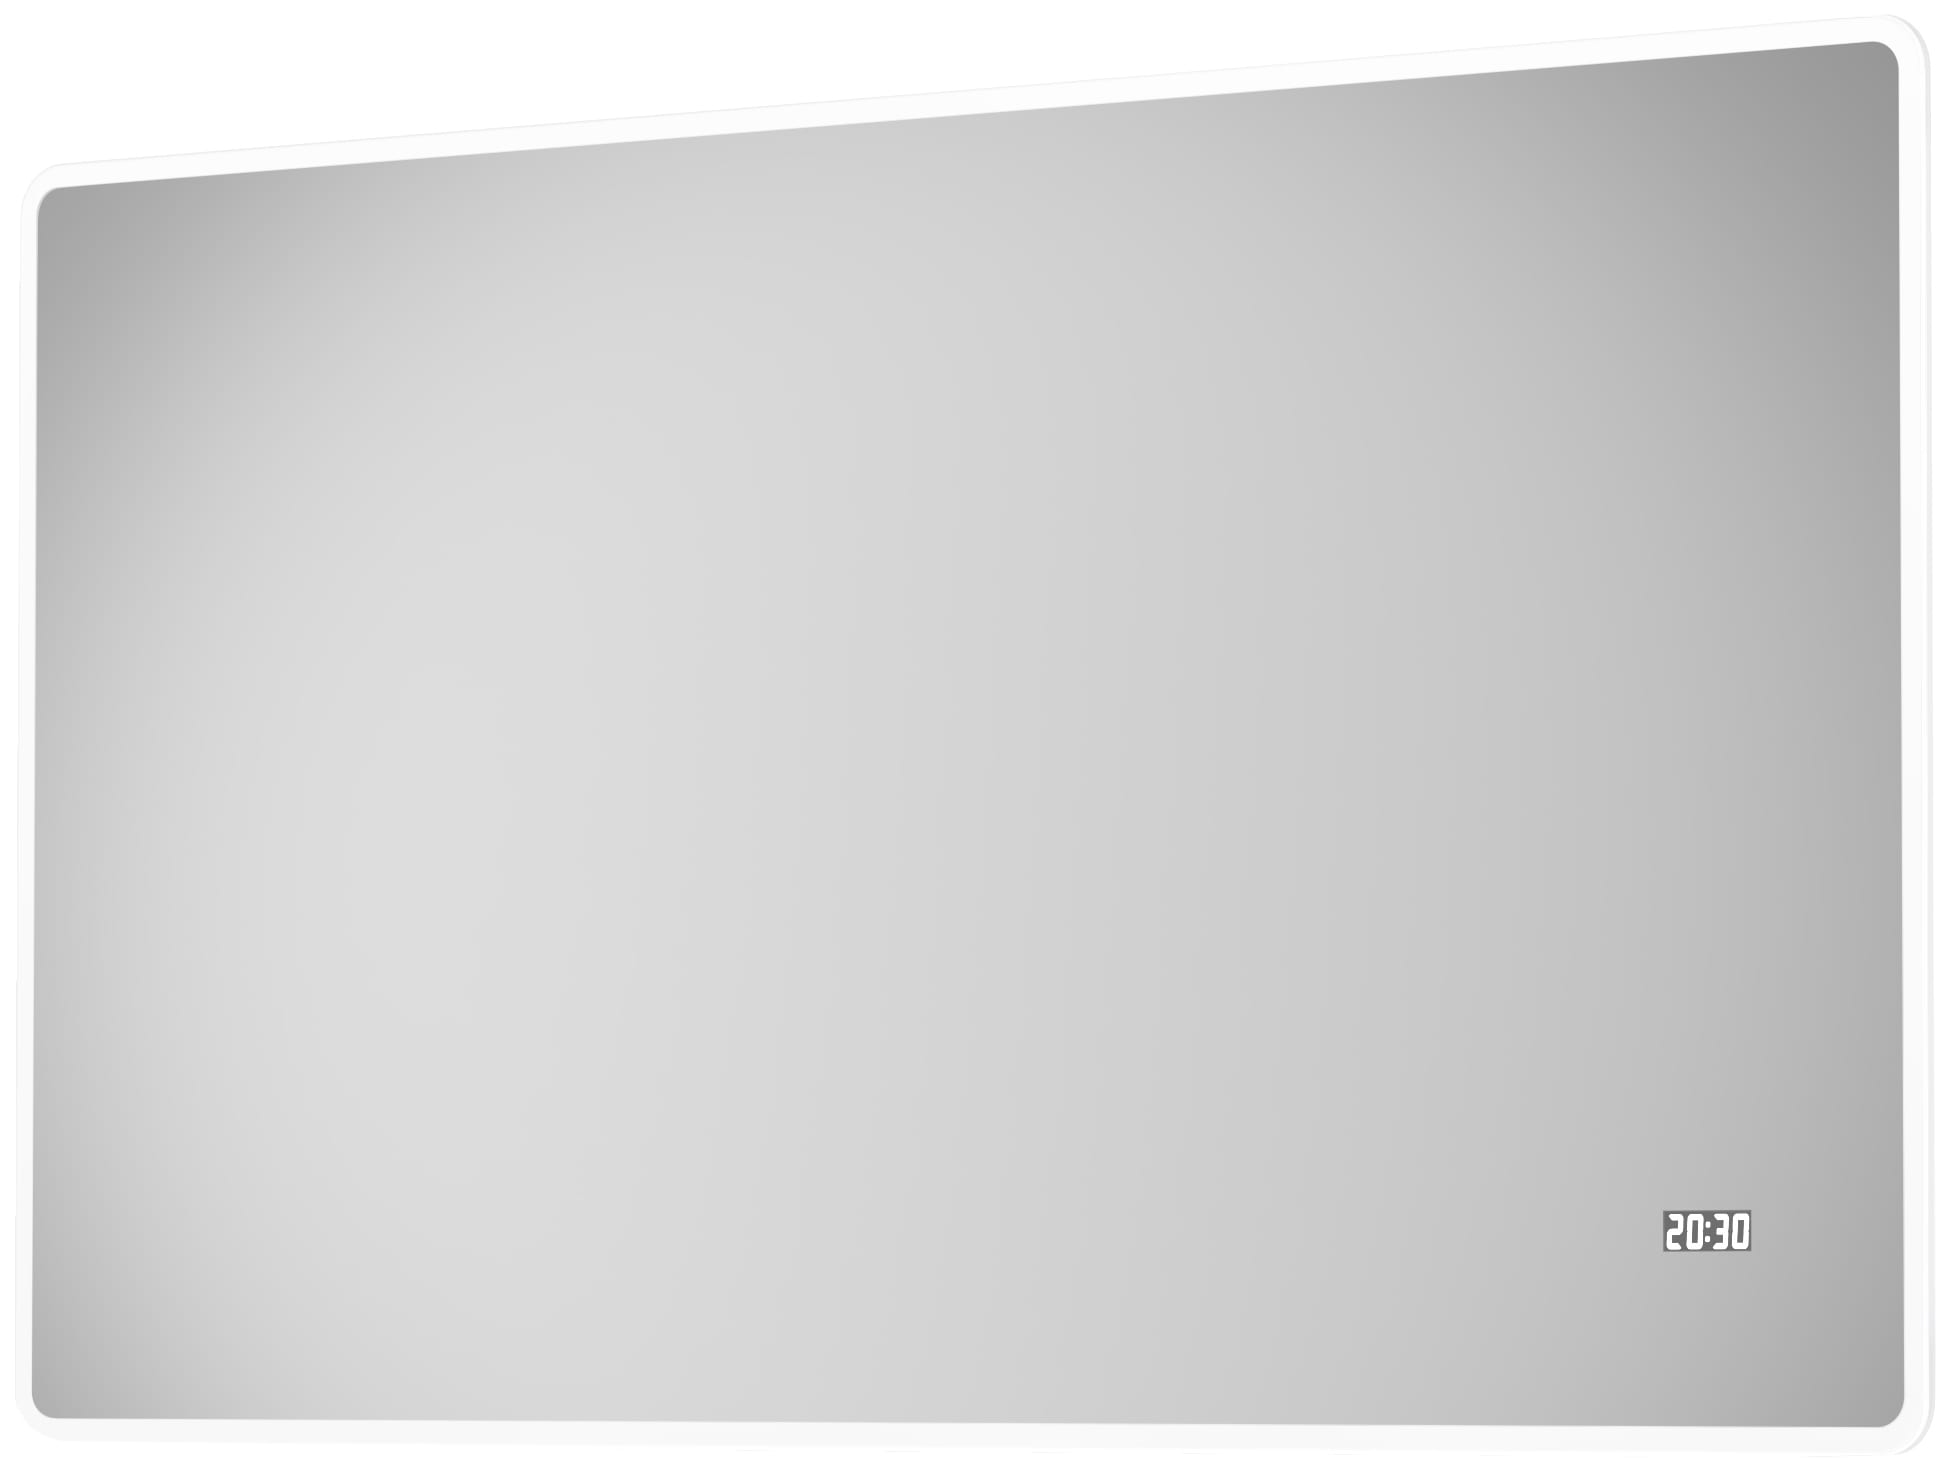 Badspiegel »Sun«, BxH: 120x70 cm, energiesparend, mit Digitaluhr